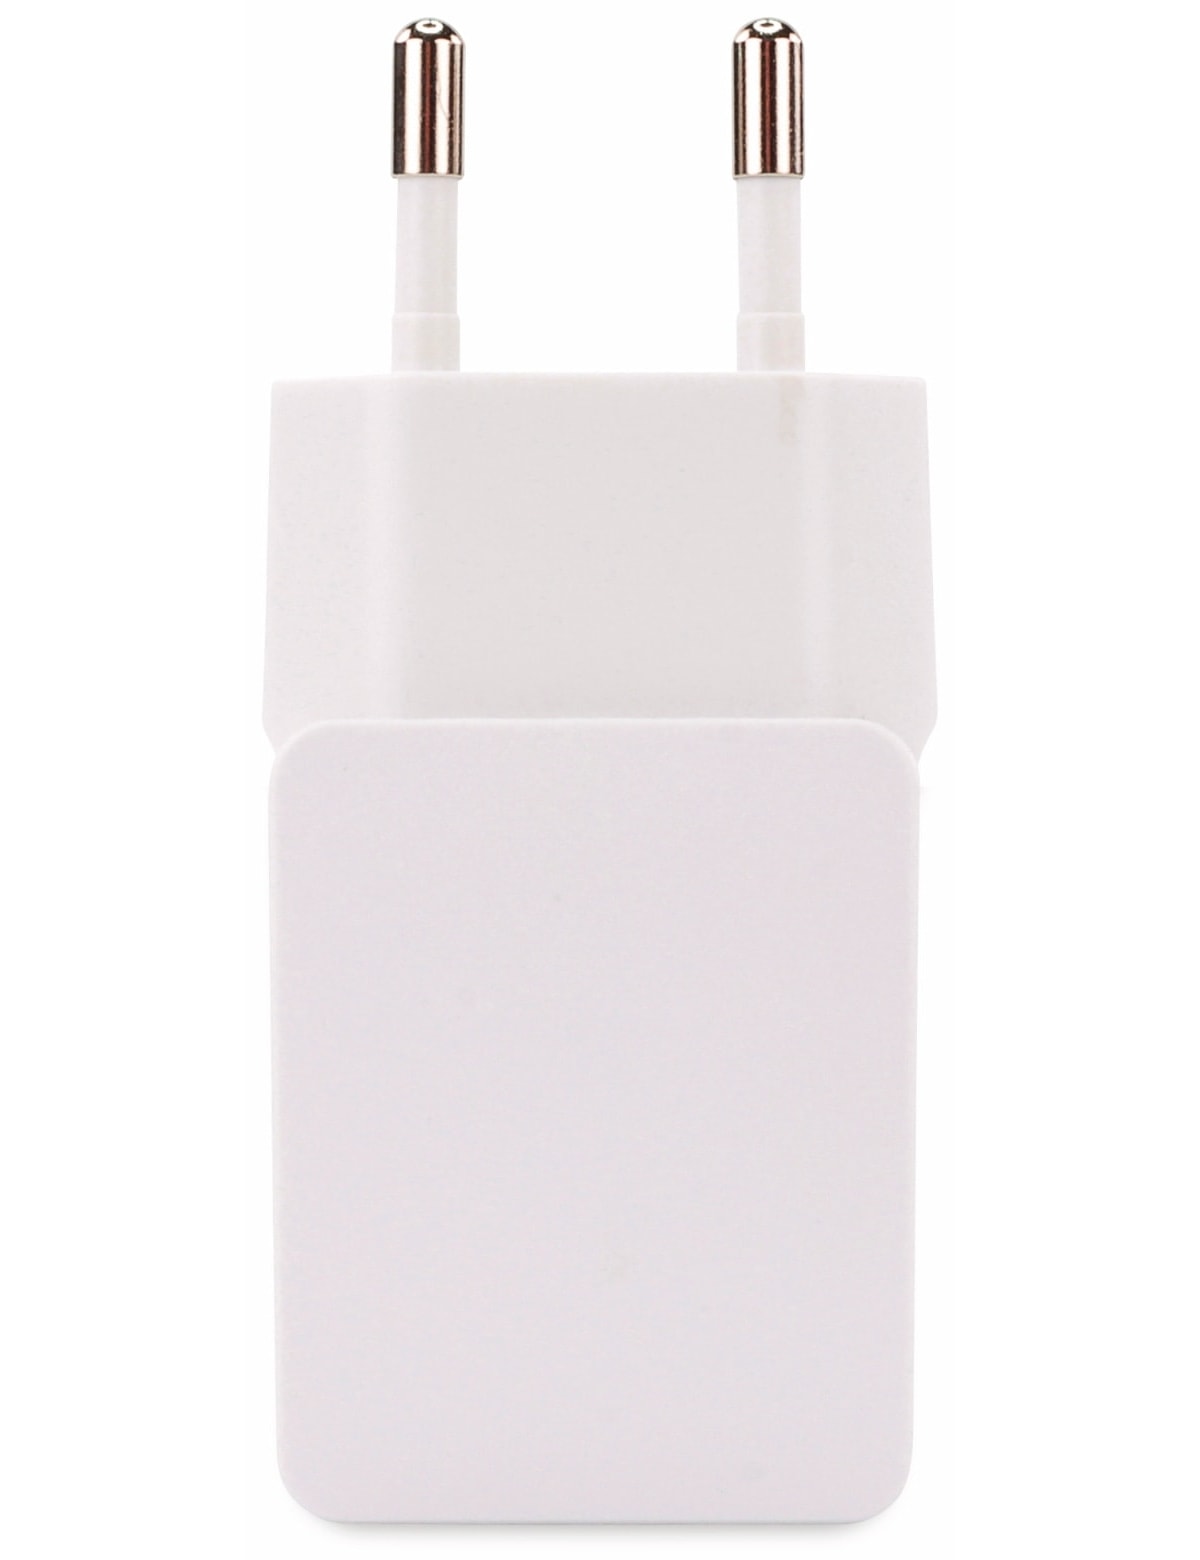 HyCell USB-Ladegerät 1 A, 1xUSB Anschluss, weiß